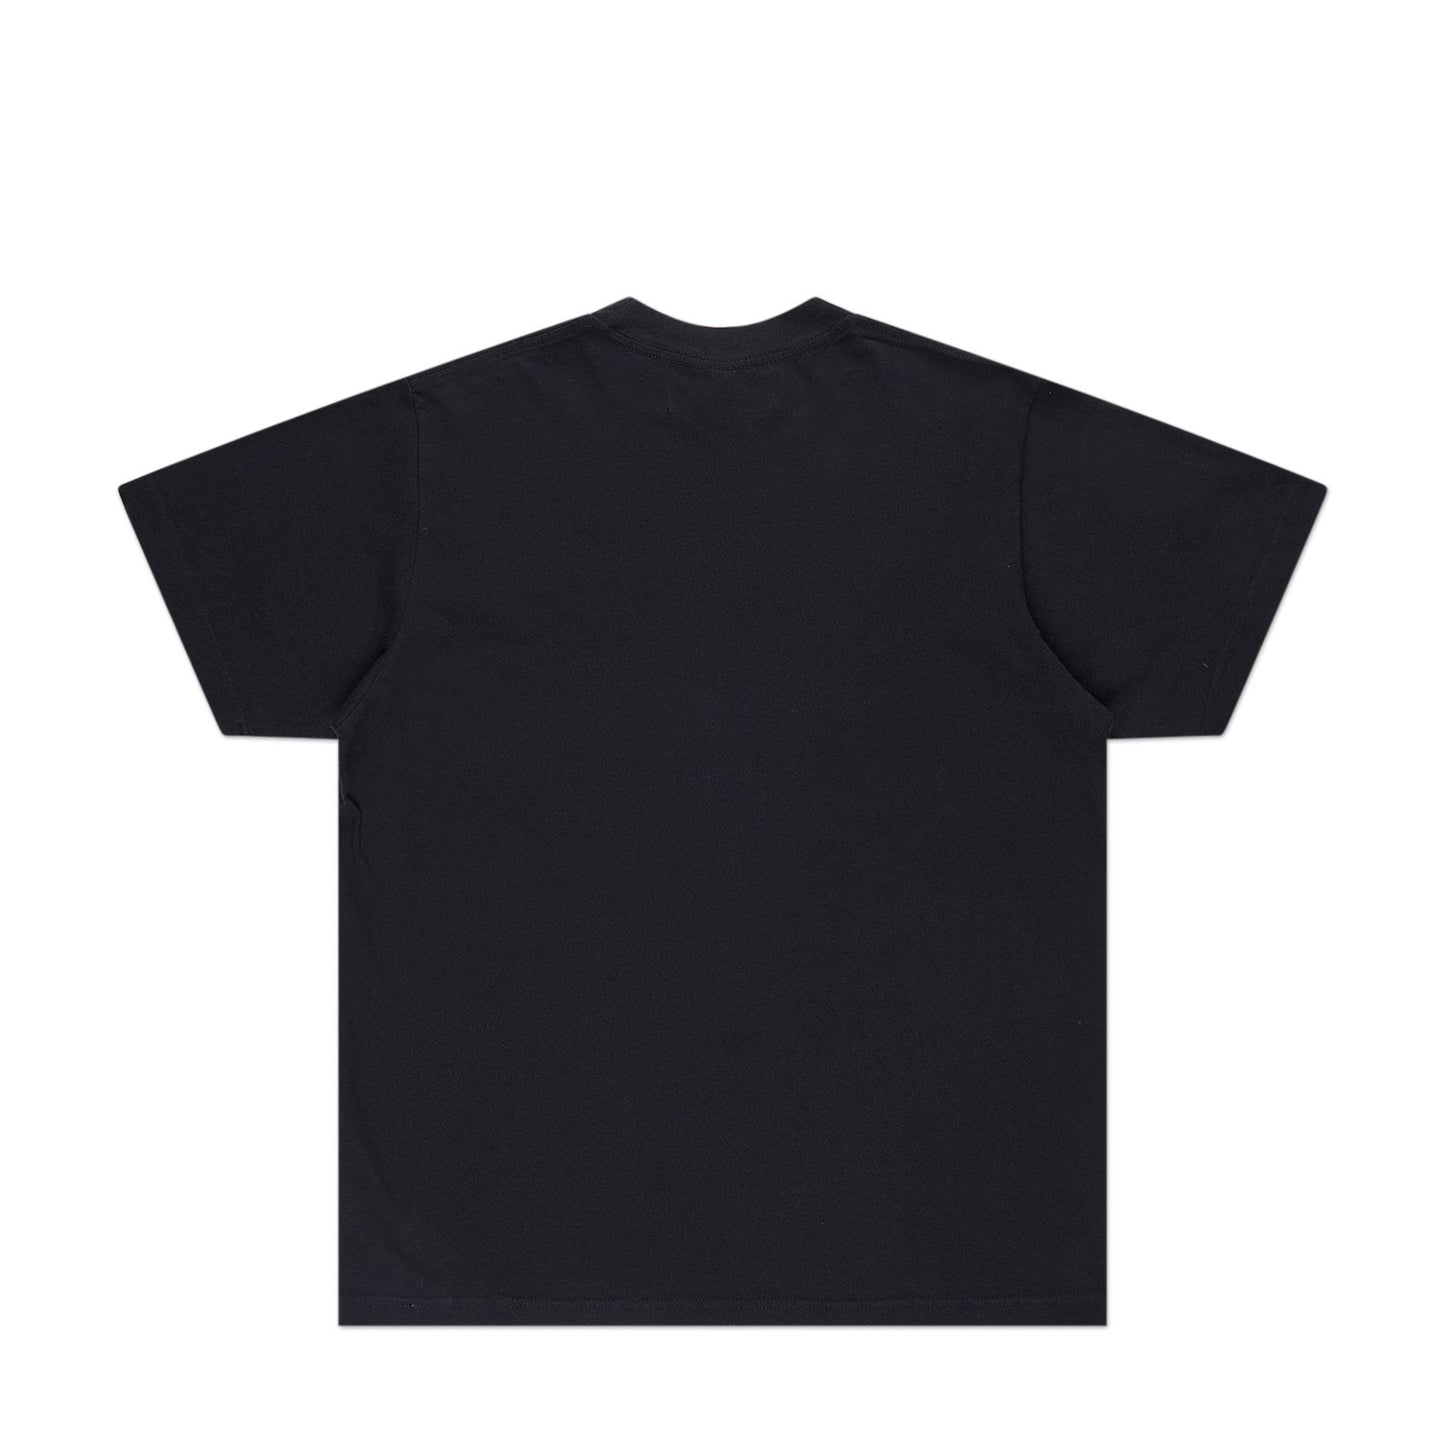 bianca chandôn logo shirt (black)